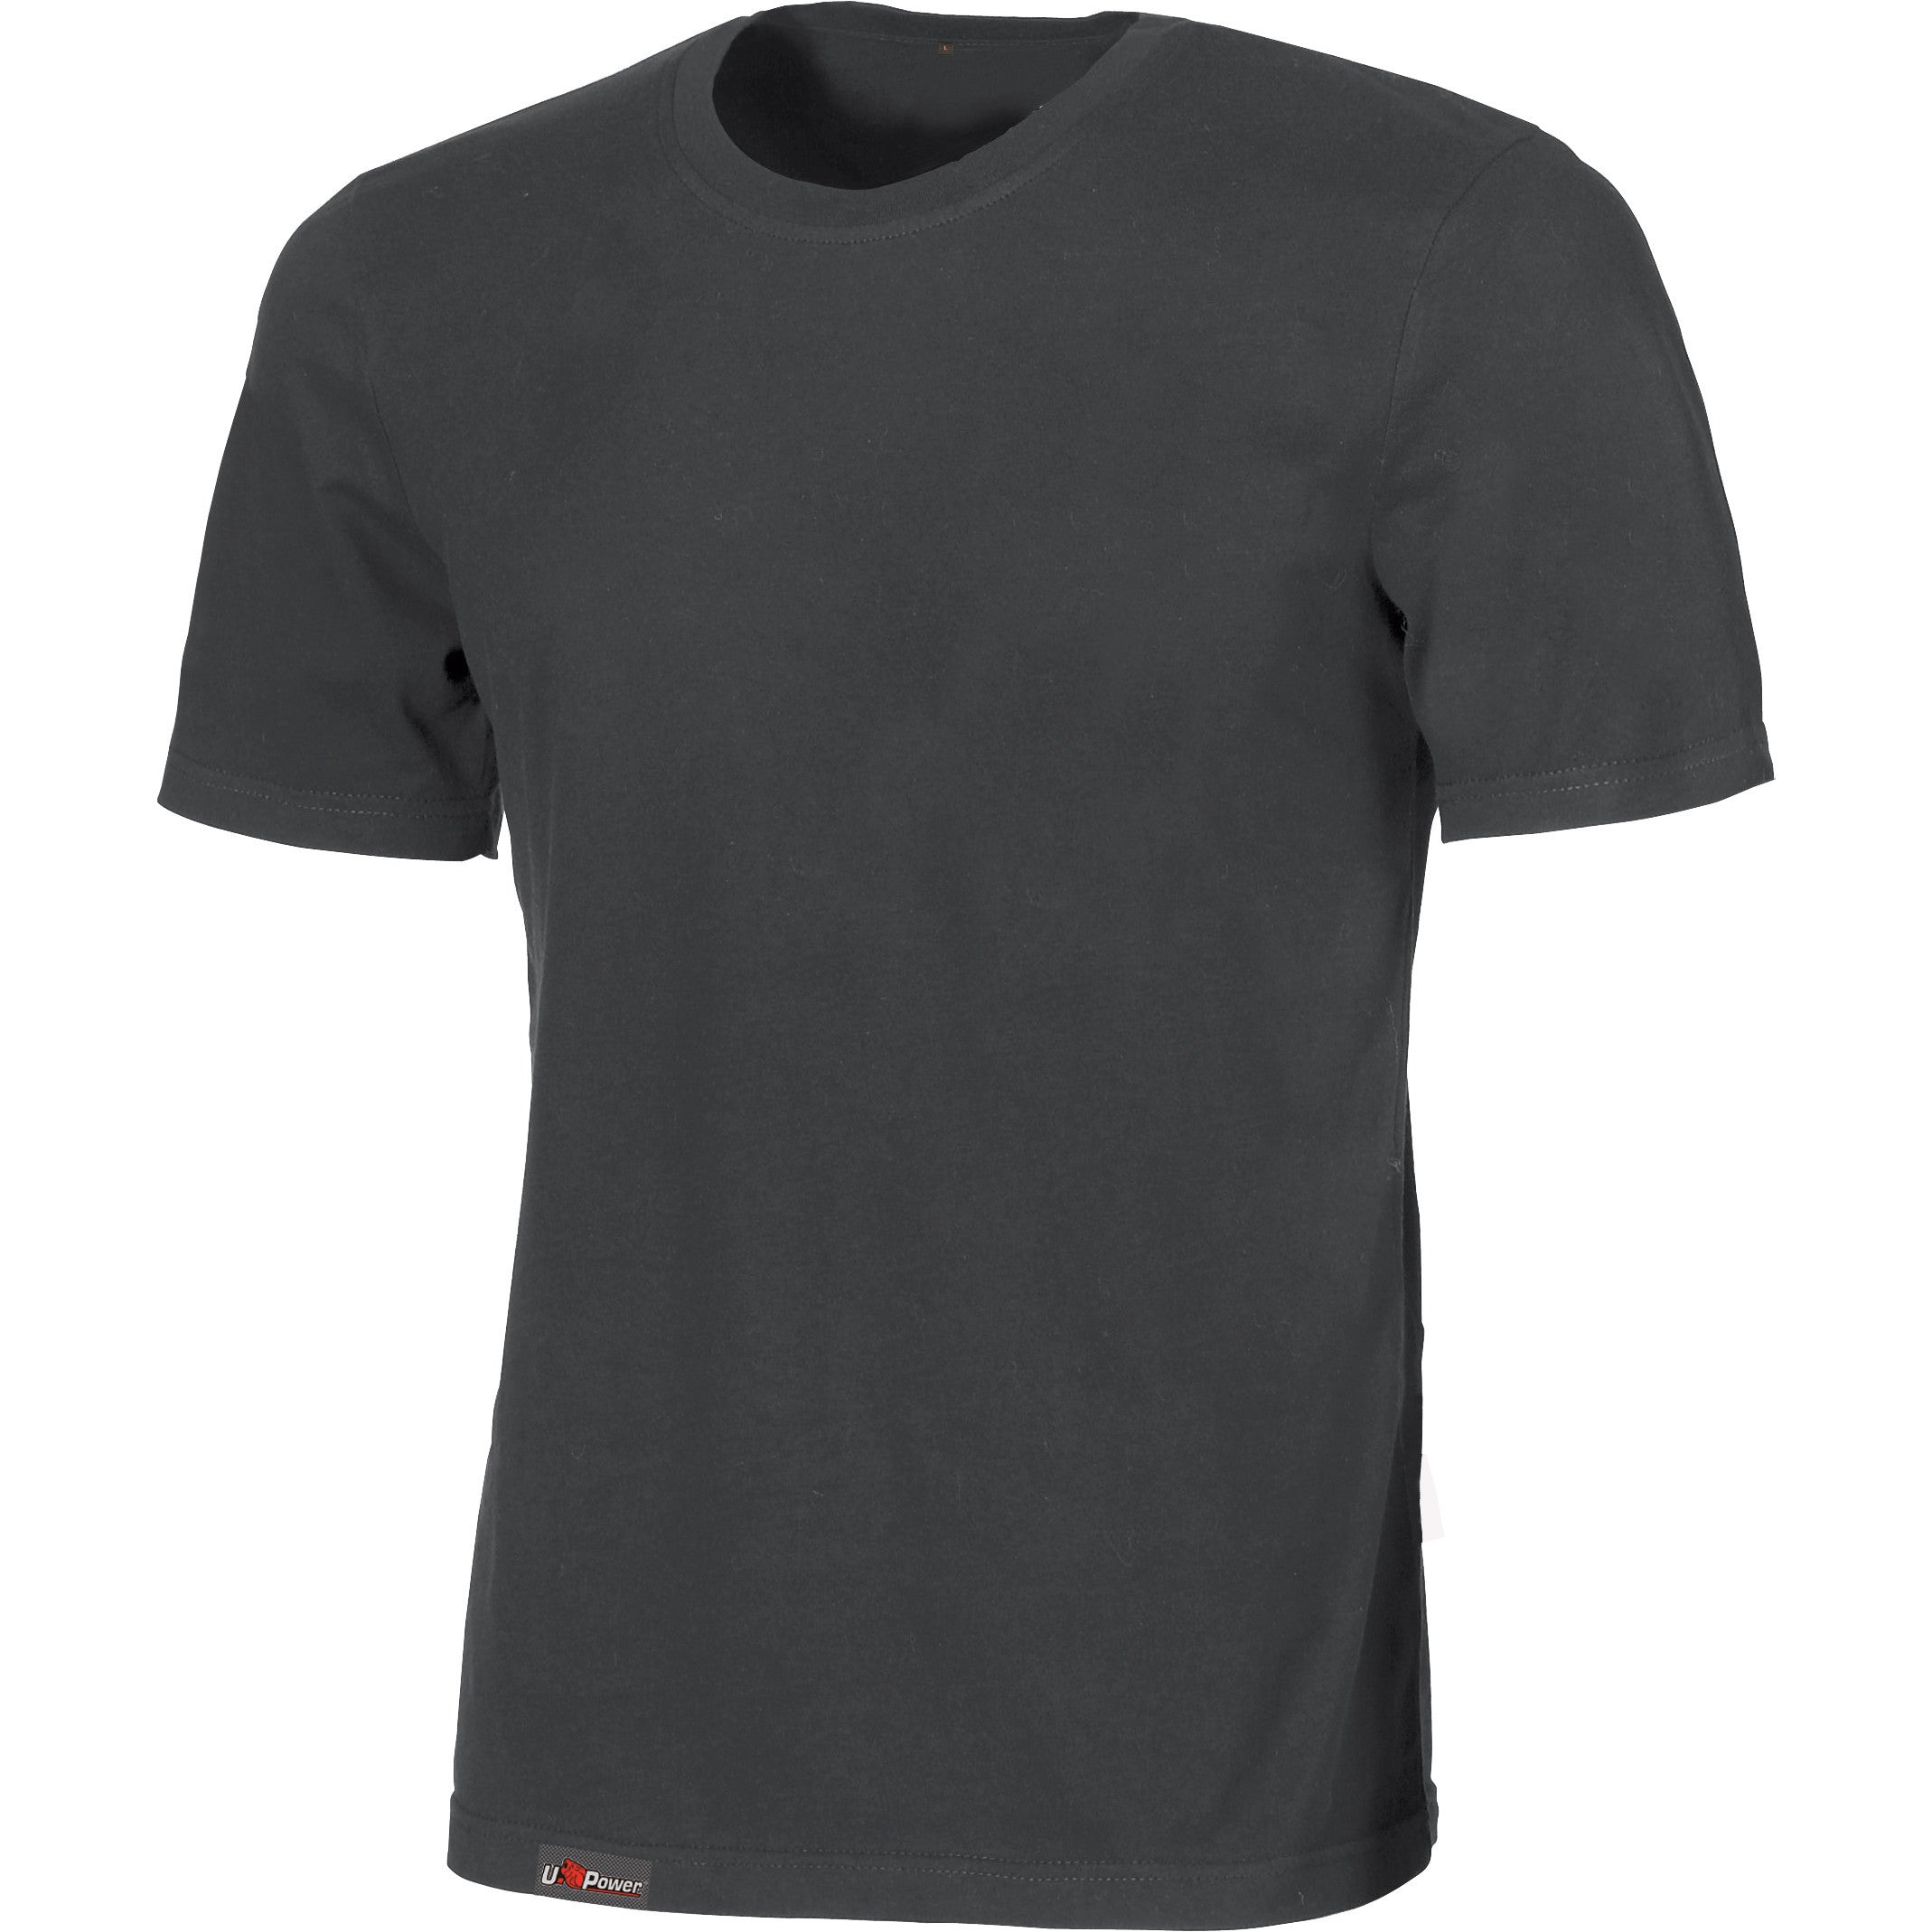 U-power t-shirt linear grigio scuro tg.xl